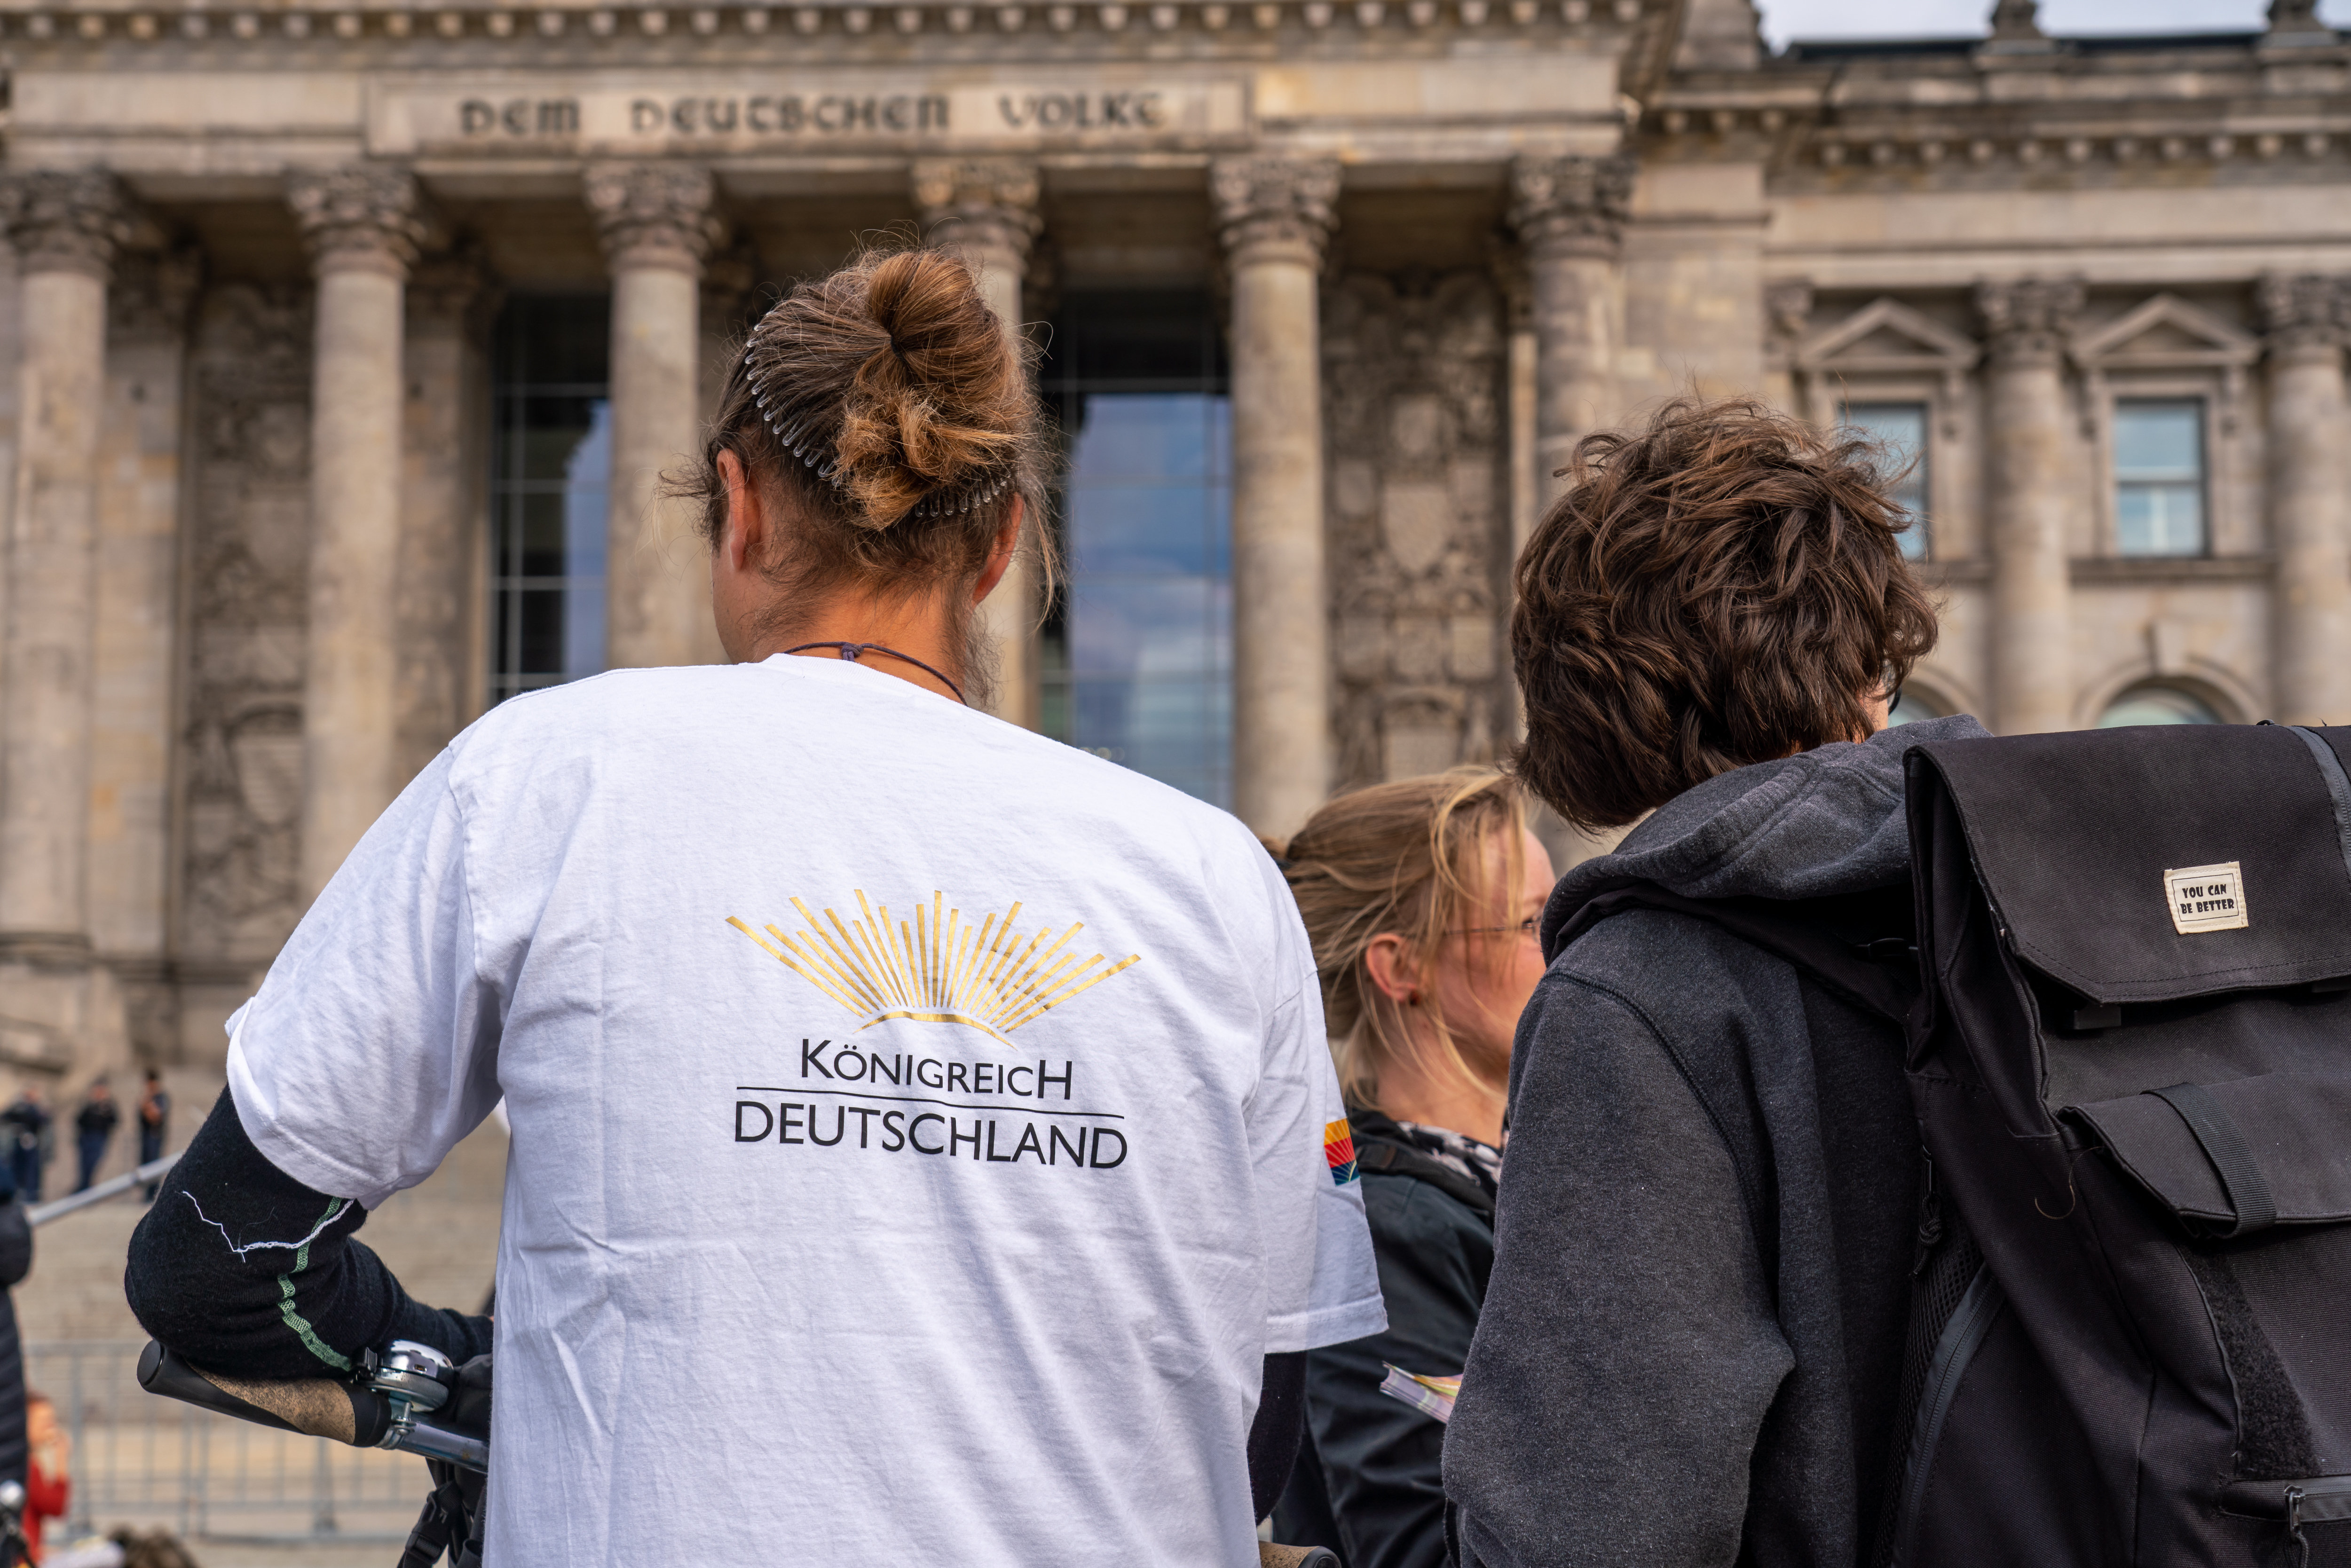 Demonstrationsteilnehmer mit "Reichsbürger"-T-Shirt | picture alliance / SULUPRESS.DE